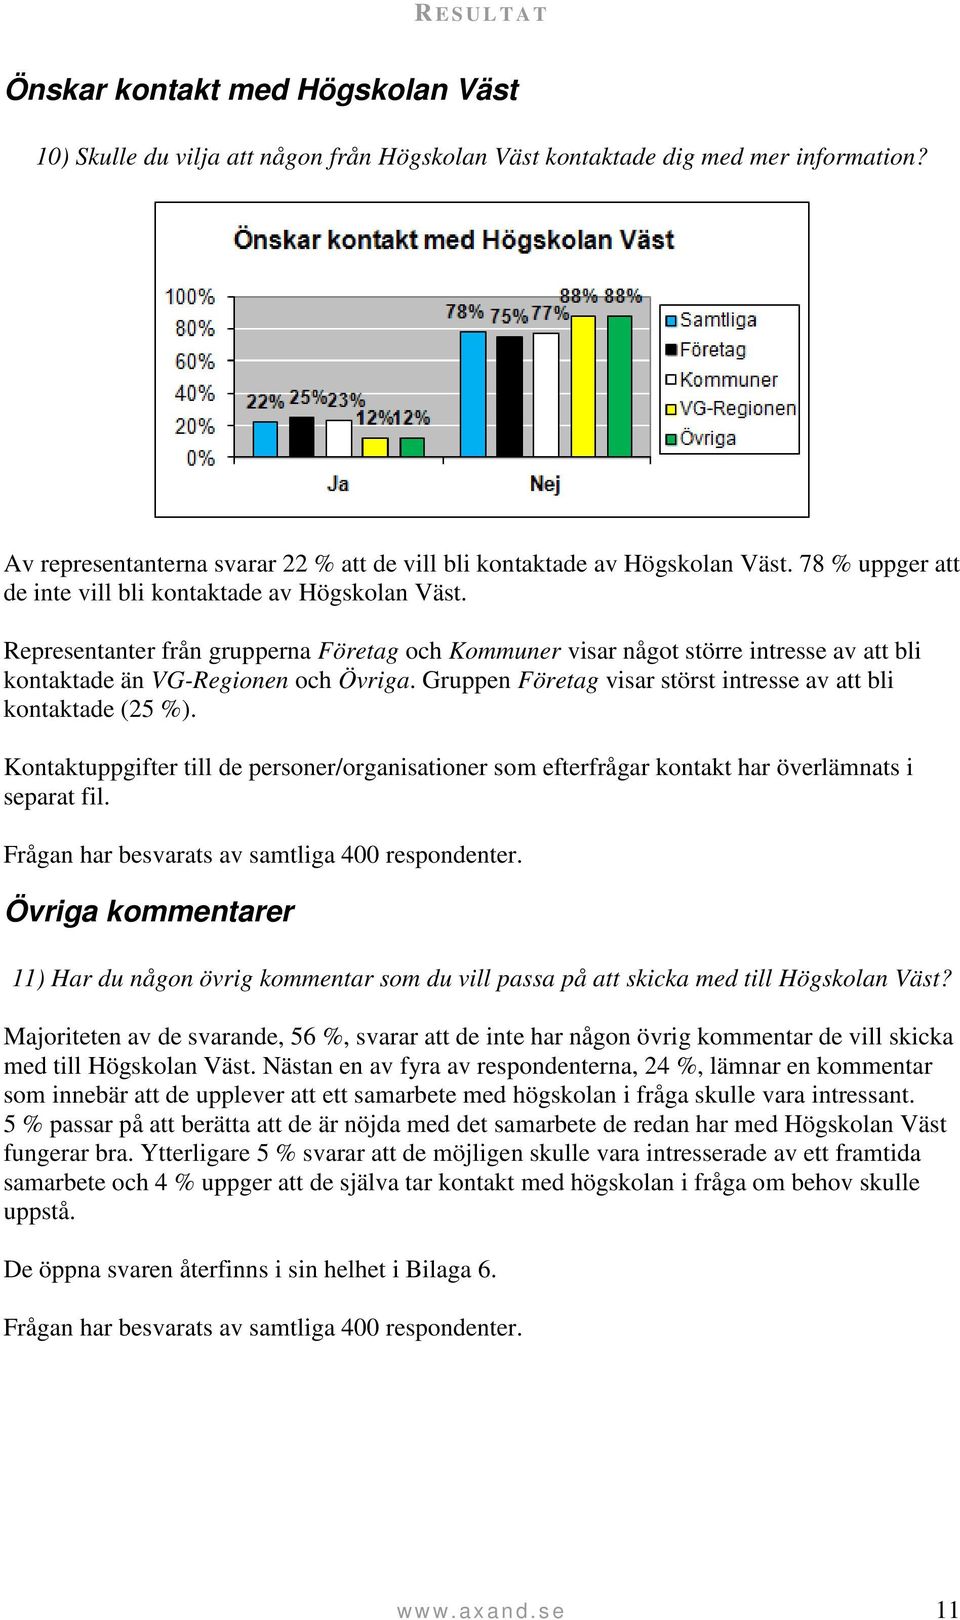 Representanter från grupperna Företag och Kommuner visar något större intresse av att bli kontaktade än VG-Regionen och Övriga. Gruppen Företag visar störst intresse av att bli kontaktade (25 %).